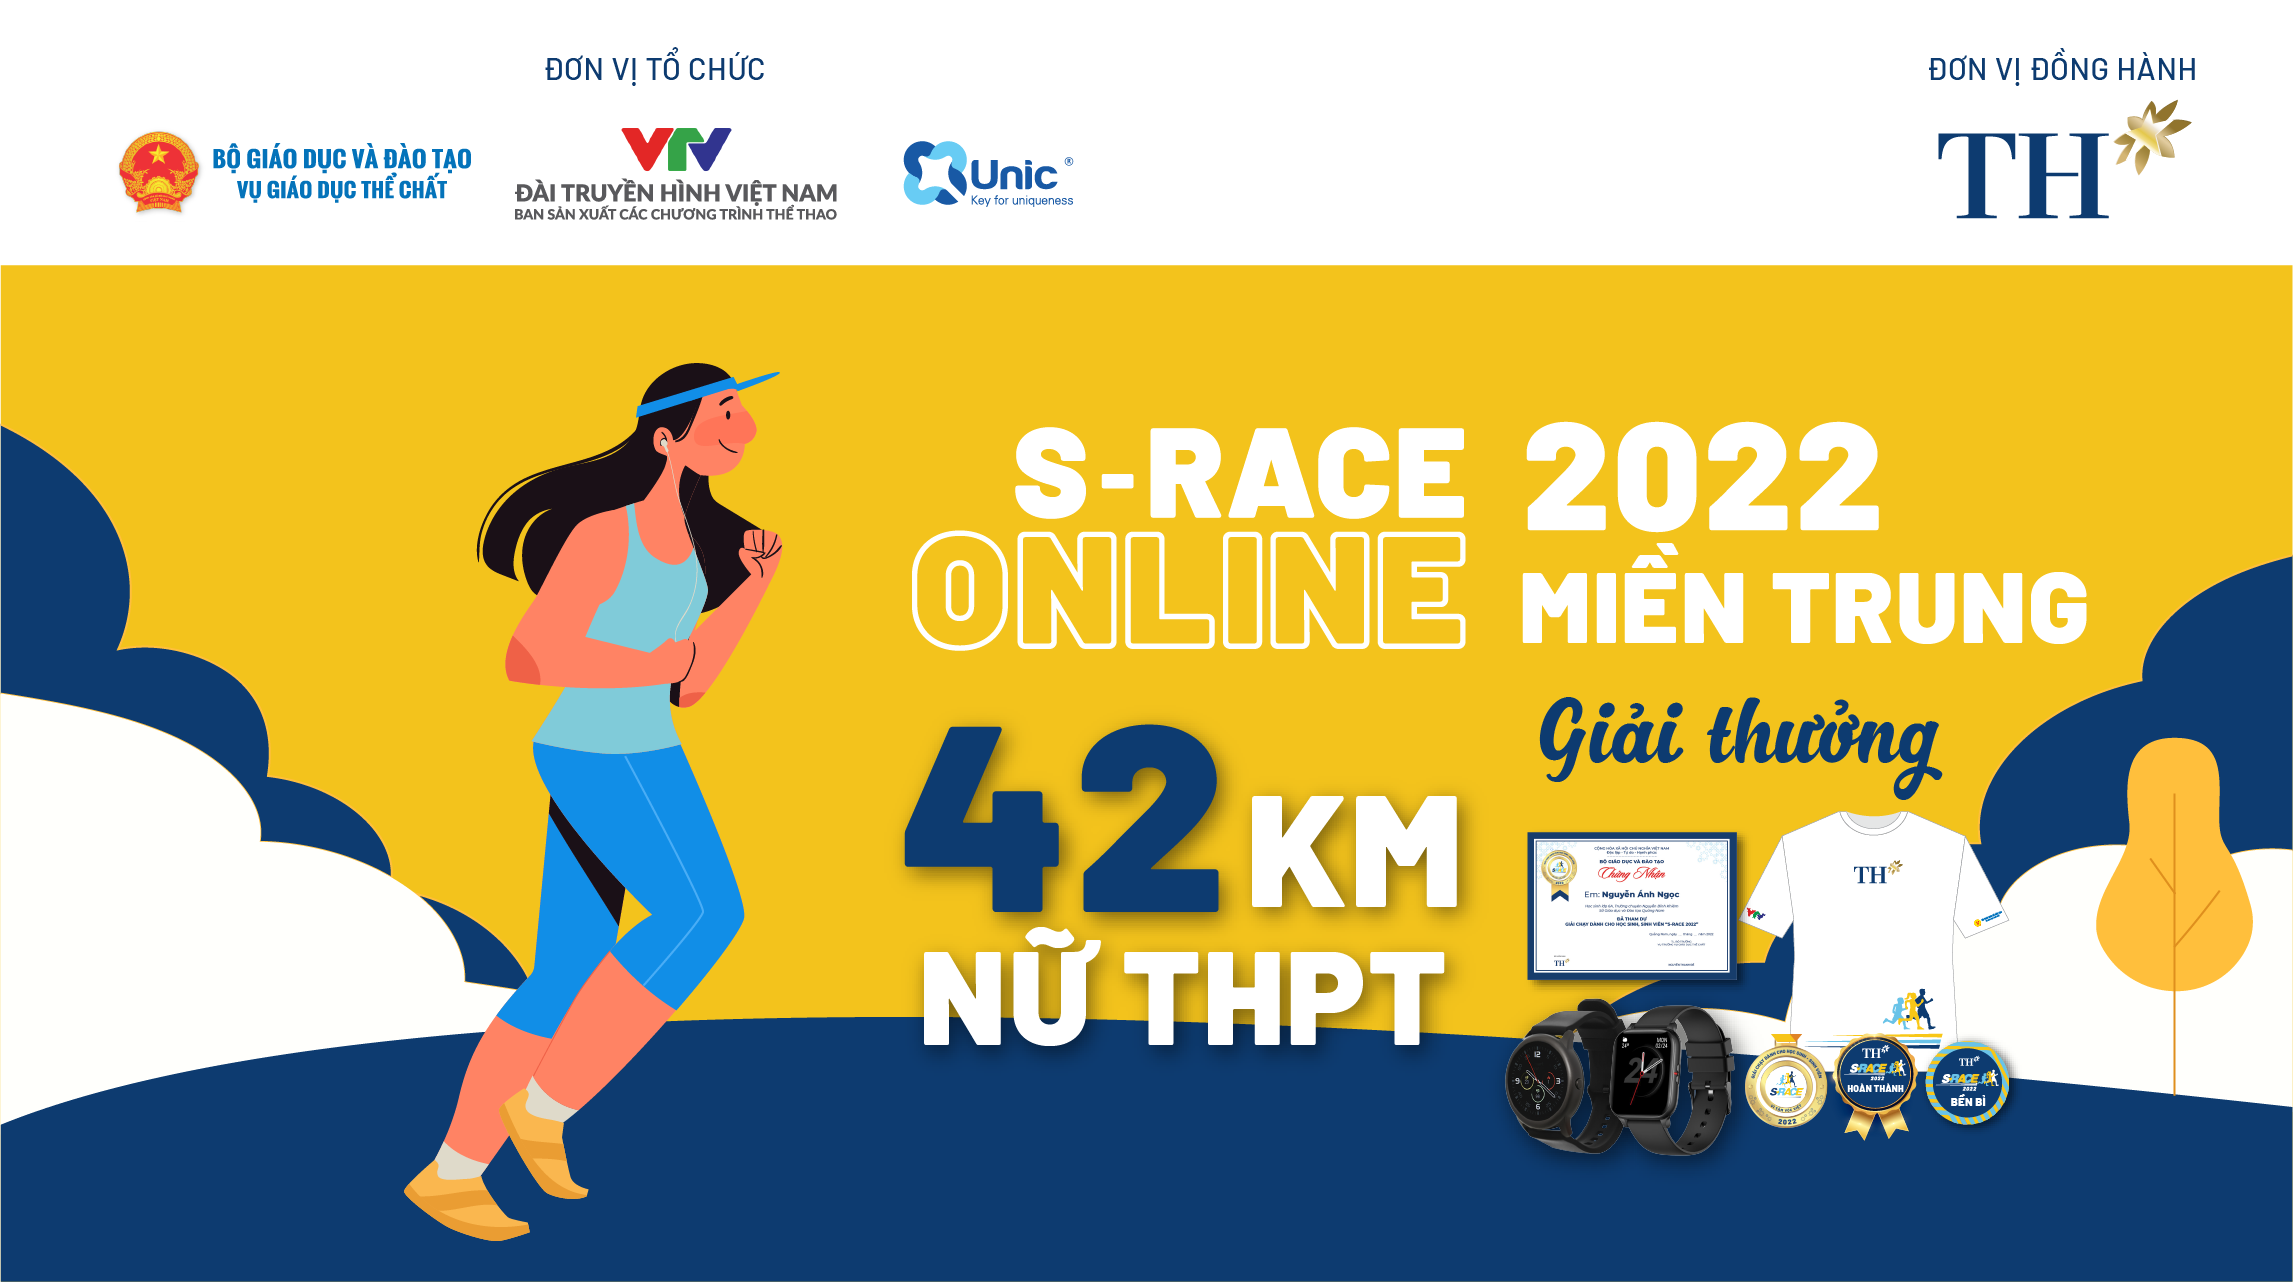 42 KM NỮ THPT (S-Race Online miền Trung) - Thử thách chạy bộ - Unlimited Chain